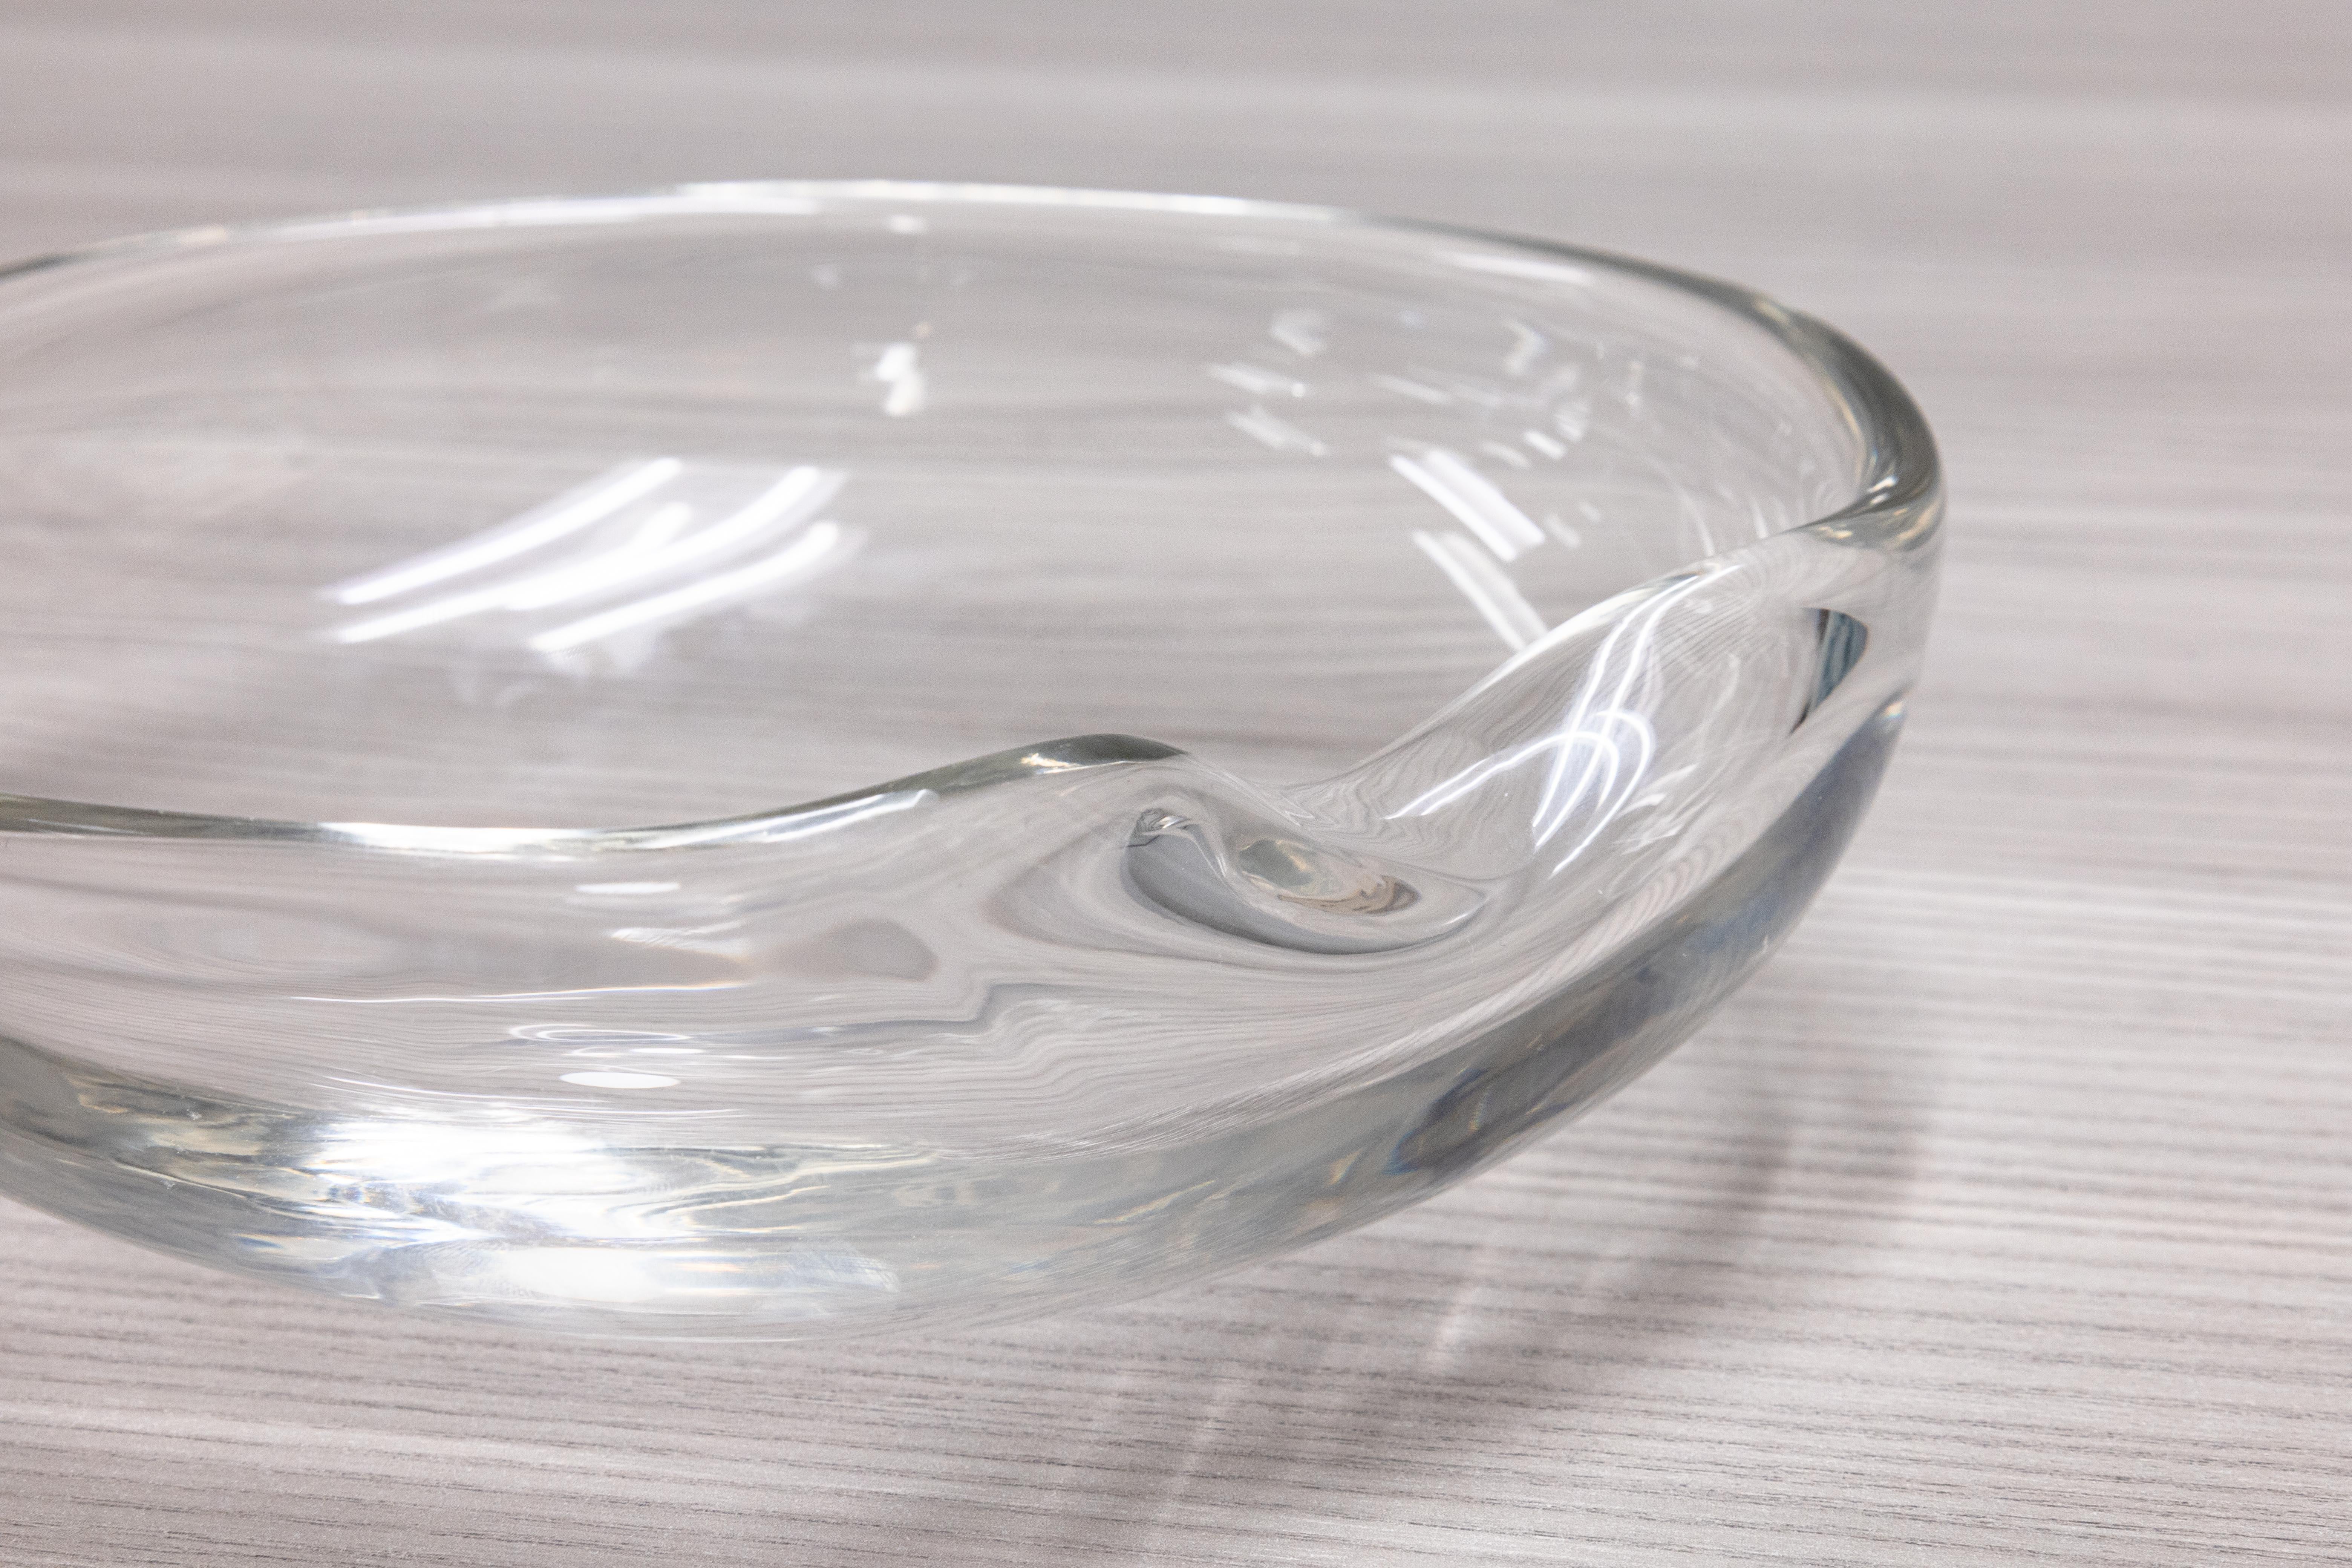 Eine wunderschöne mundgeblasene Glasschale, entworfen von Elsa Peretti für Tiffany & Co. Dieses Stück, bekannt als 